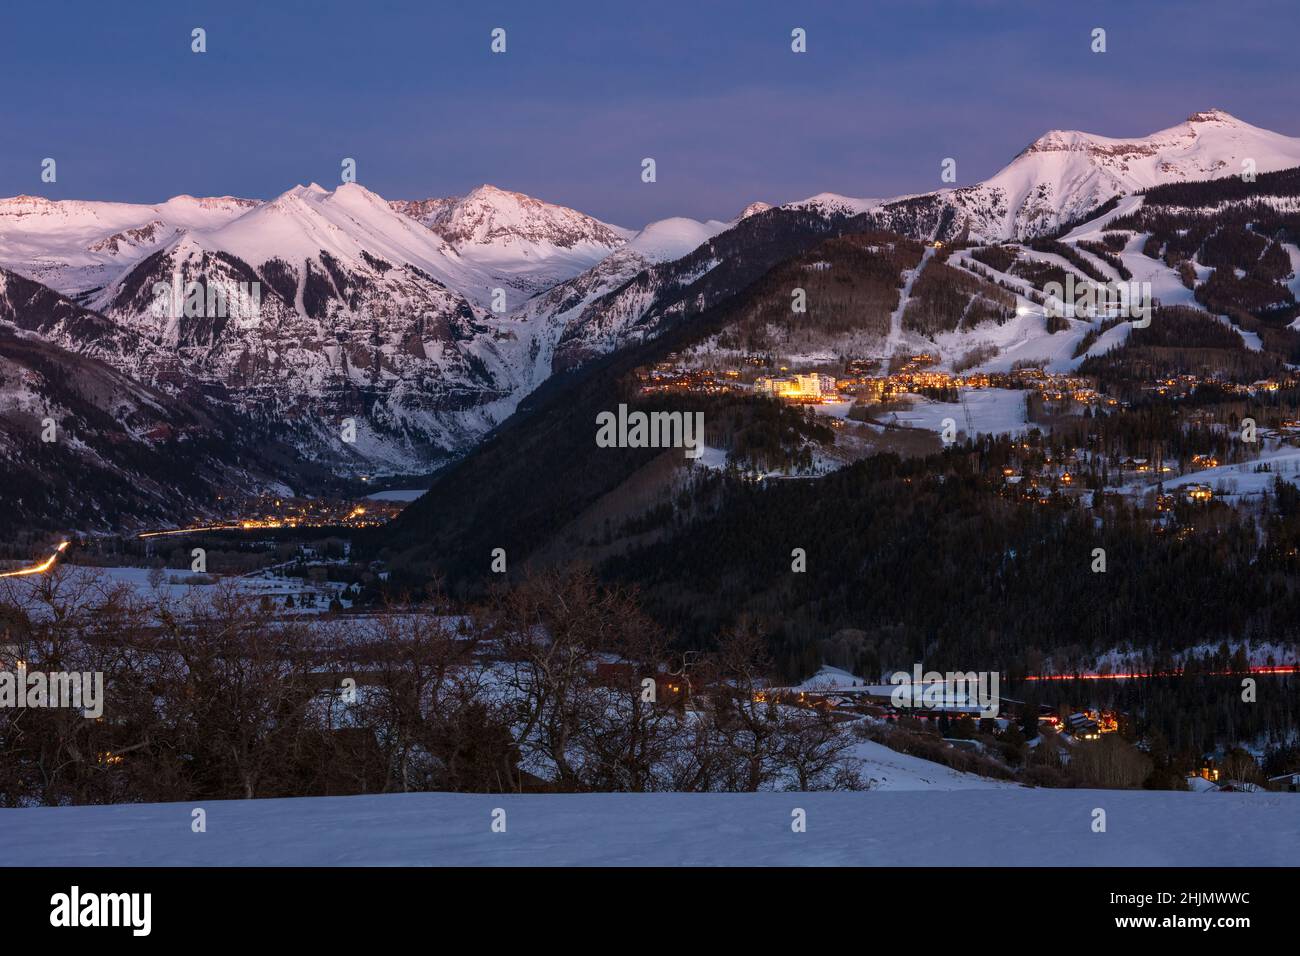 Le montagne di San Juan e Telluride, Colorado in inverno con neve fresca Foto Stock